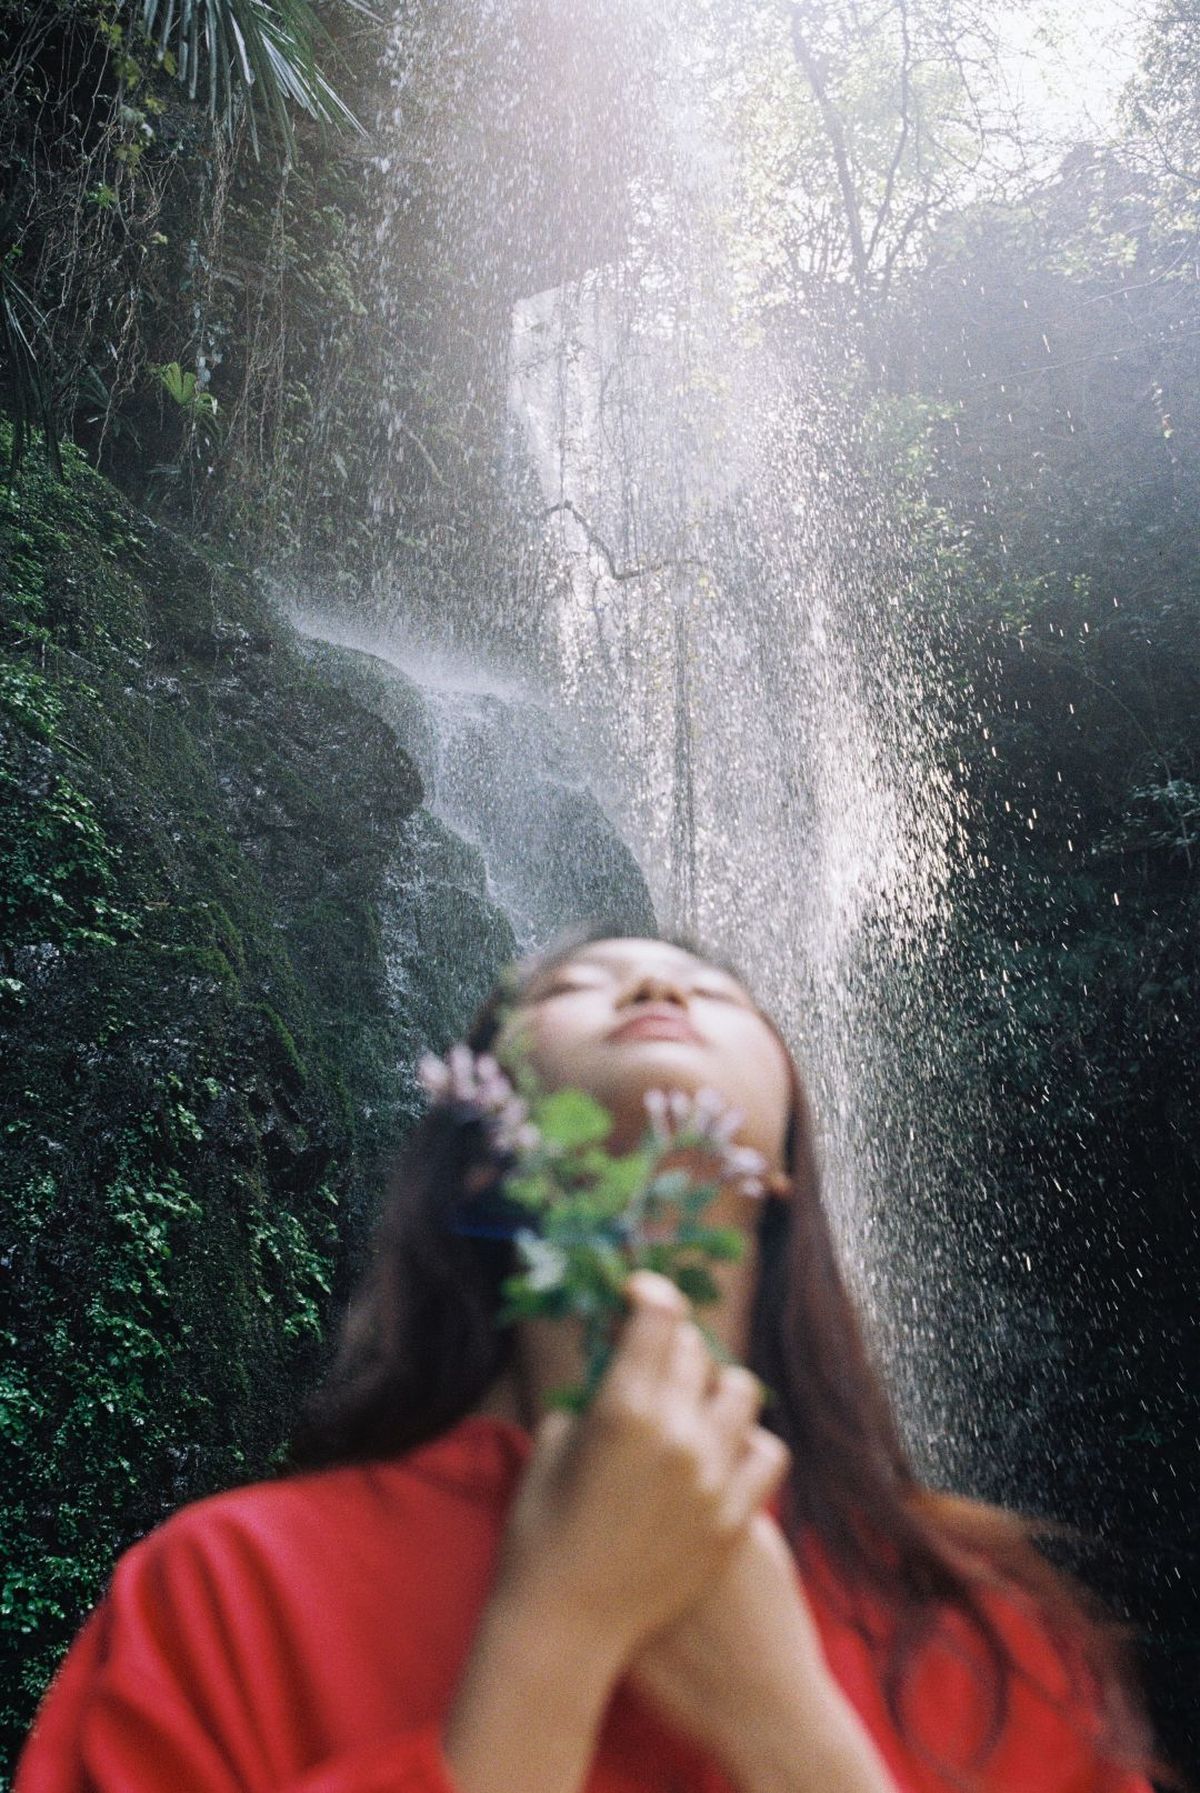 一位女子在森林中的瀑布前举起一朵花对着自己的脸 水花溅在她的脸上。